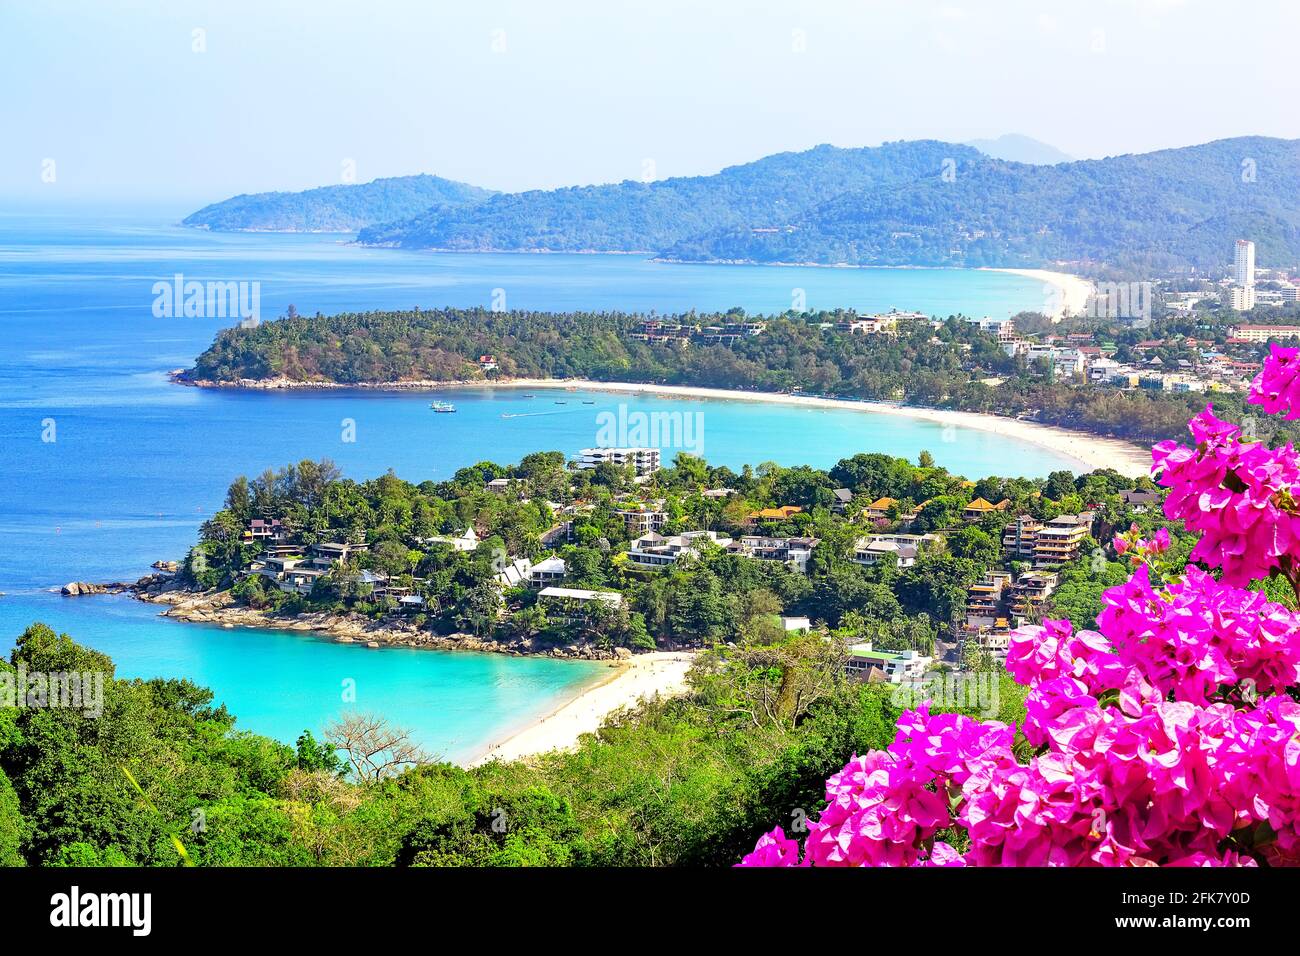 Blick auf Karon Beach, Kata Beach und Kata Noi in Phuket, Thailand. Wunderschönes türkisfarbenes Meer und blauer Himmel vom Aussichtspunkt aus. Panorama des Reisesommers Stockfoto